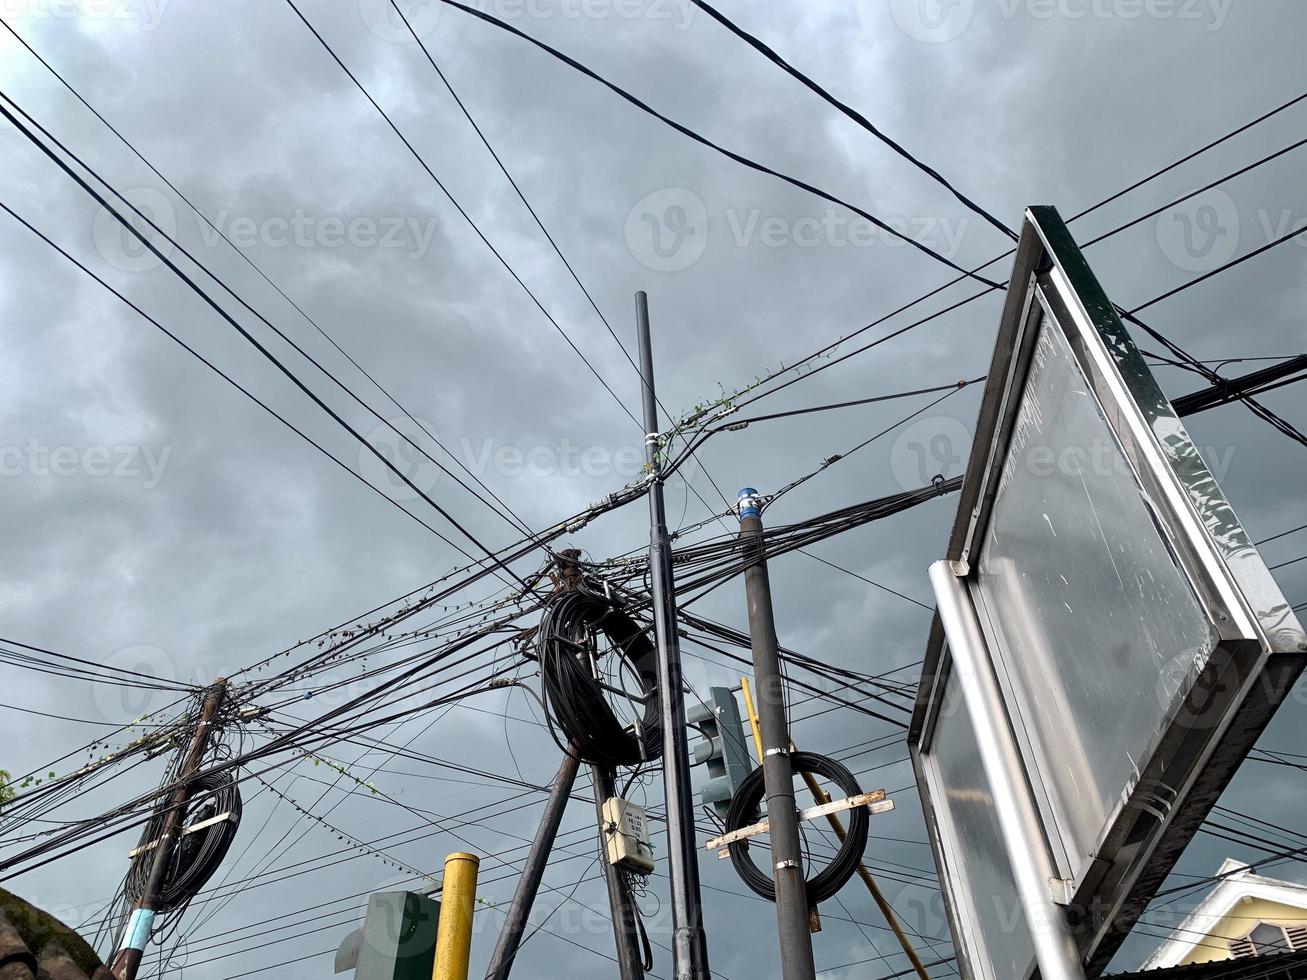 poste elétrico relâmpago com fios desorganizados. perigo de alta tensão elétrica. silhueta de pólo elétrico. foto